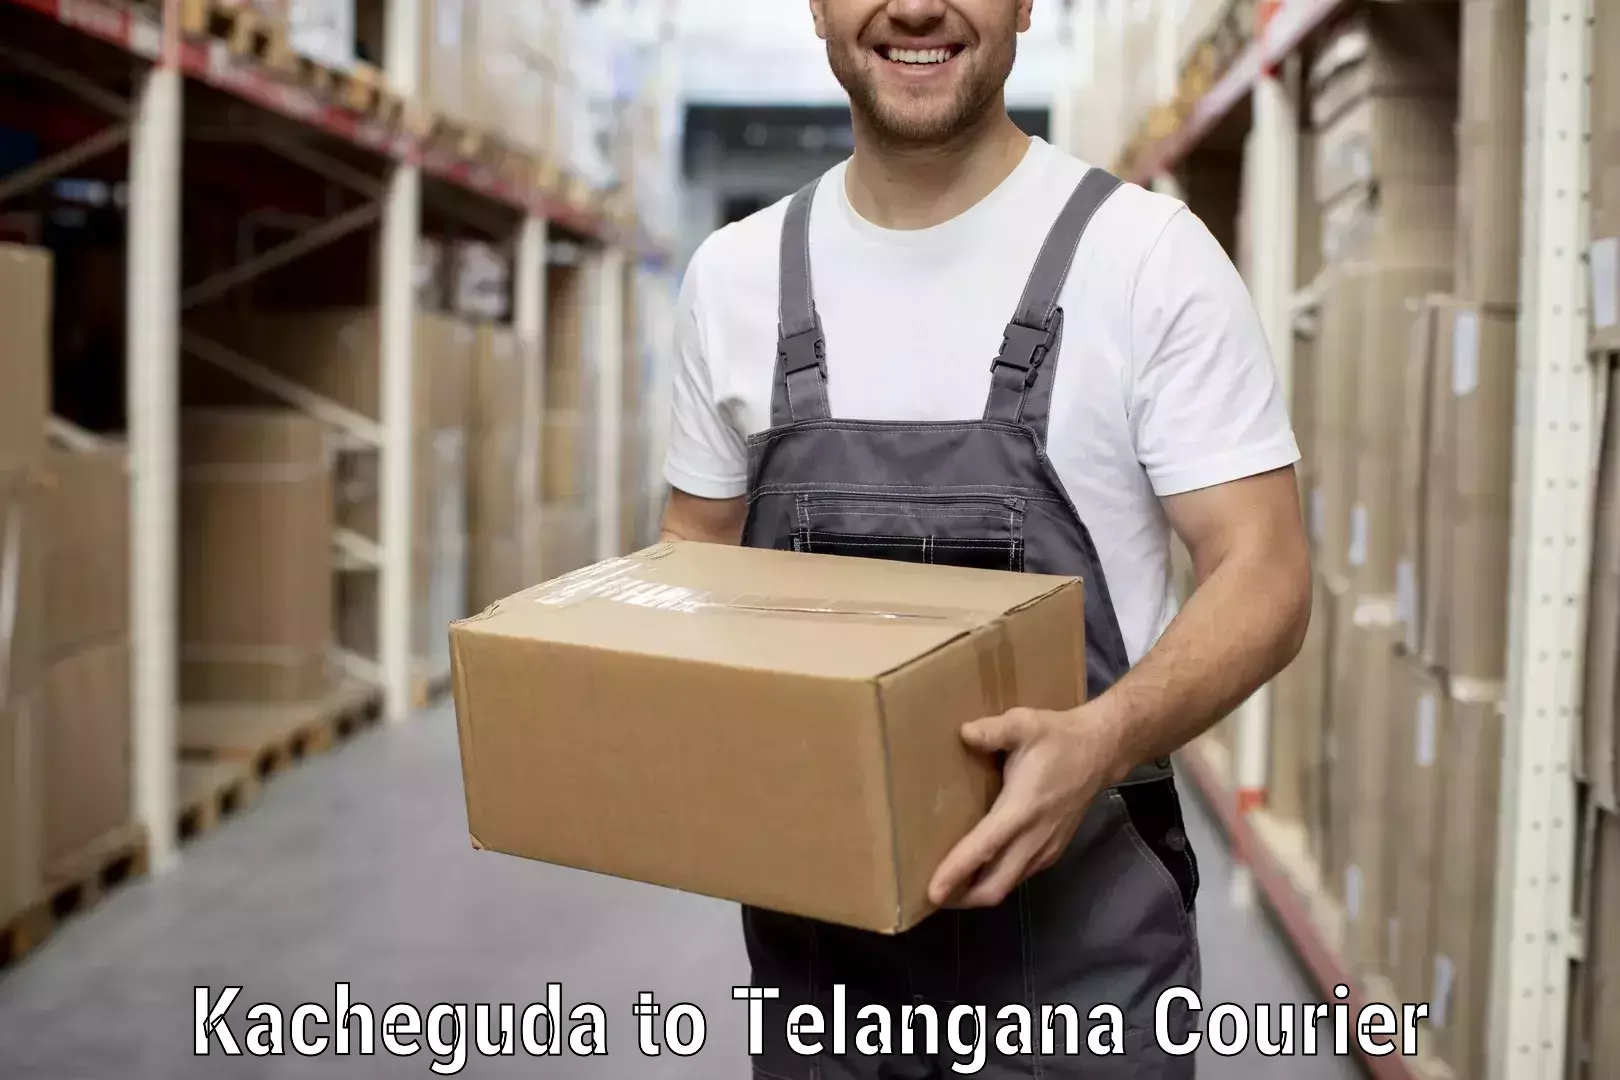 Home goods moving company Kacheguda to Mancherial